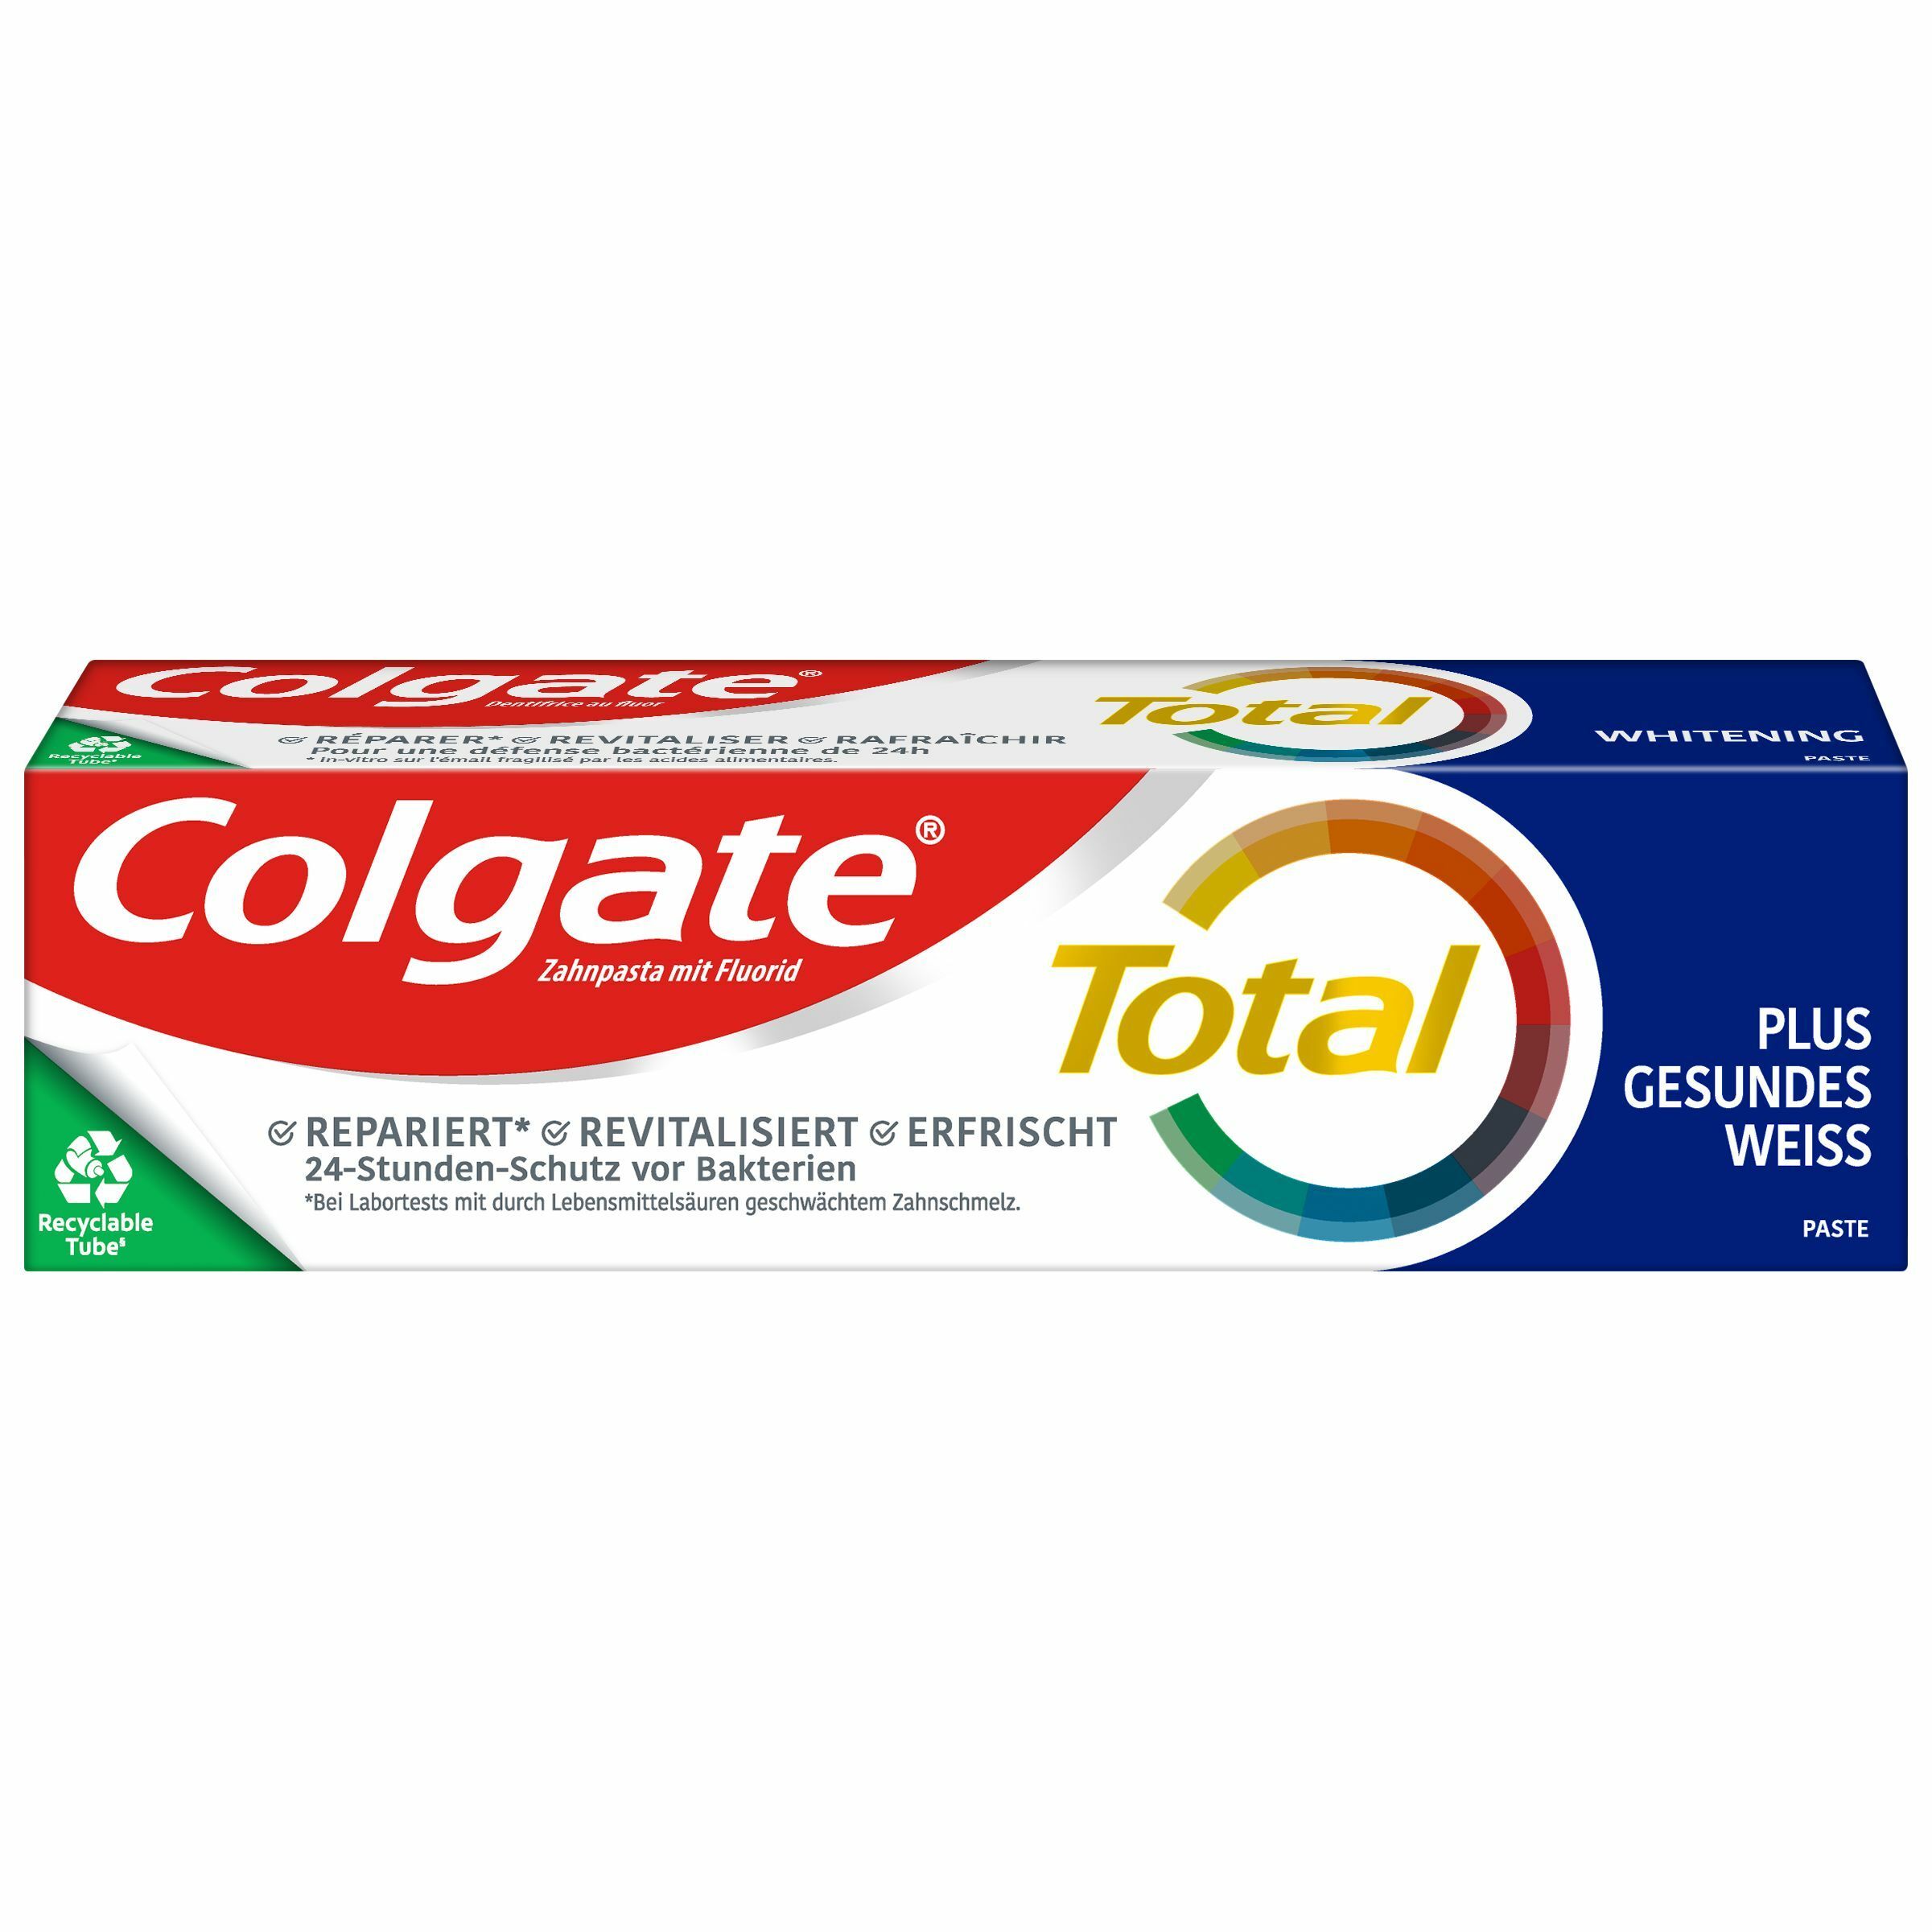 Image of Colgate Total Plus Gesundes Weiß